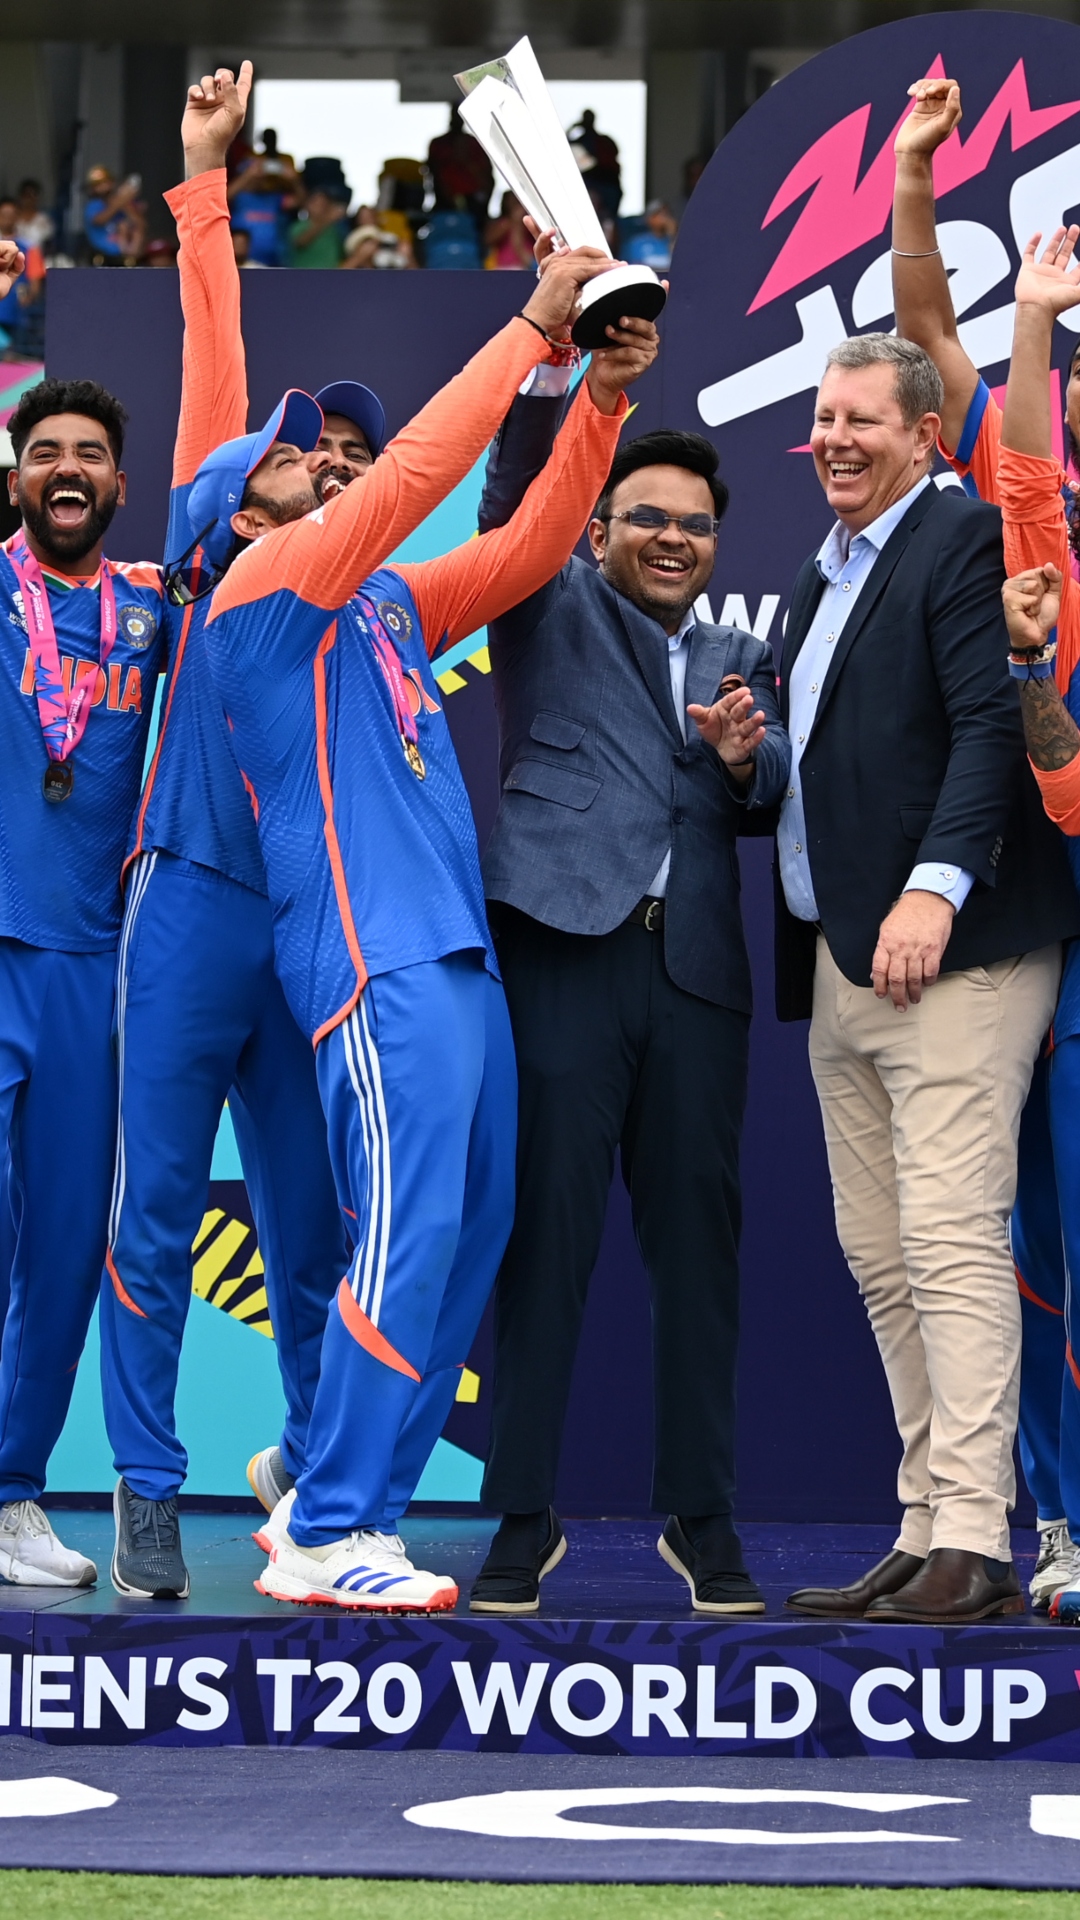 सबसे ज्यादा बार ICC खिताब जीतने वाले देश, इस नंबर पर पहुंच गया भारत